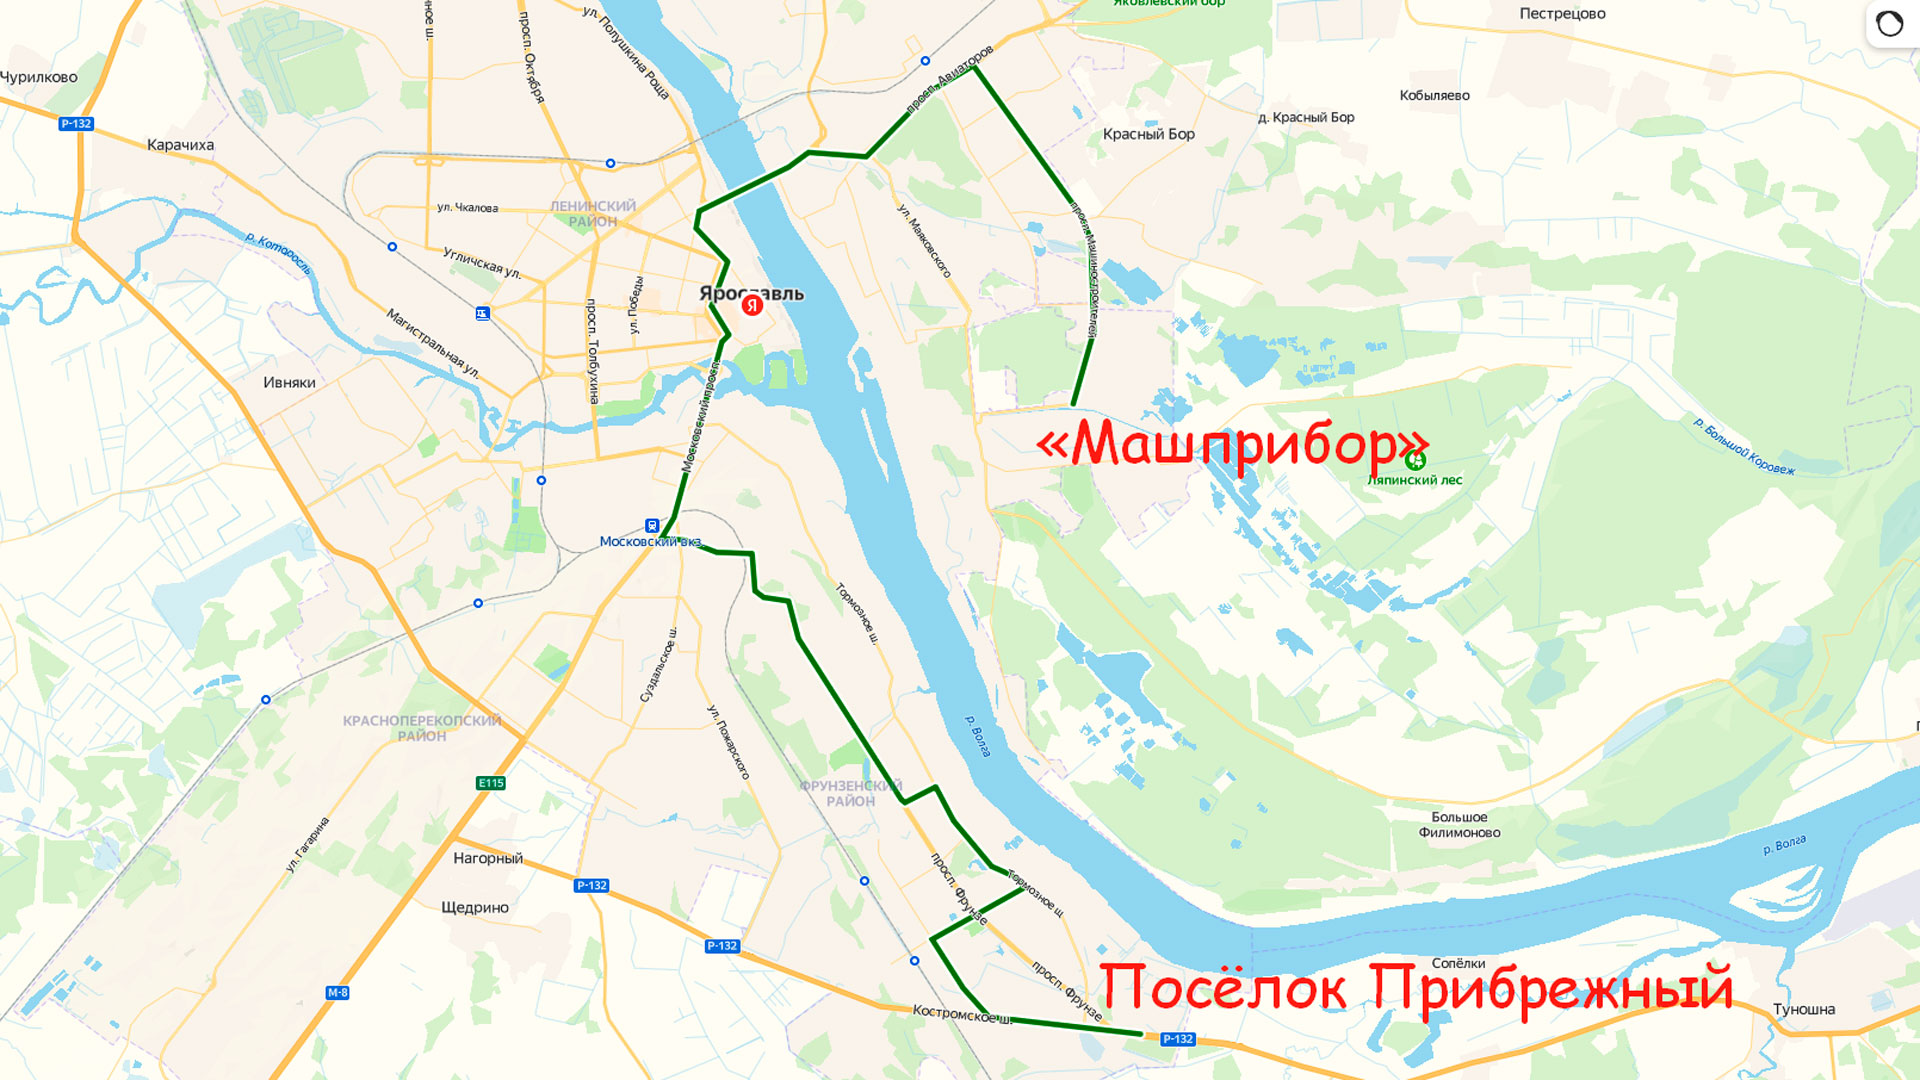 Маршрут автобуса 56 в Ярославле на карте.